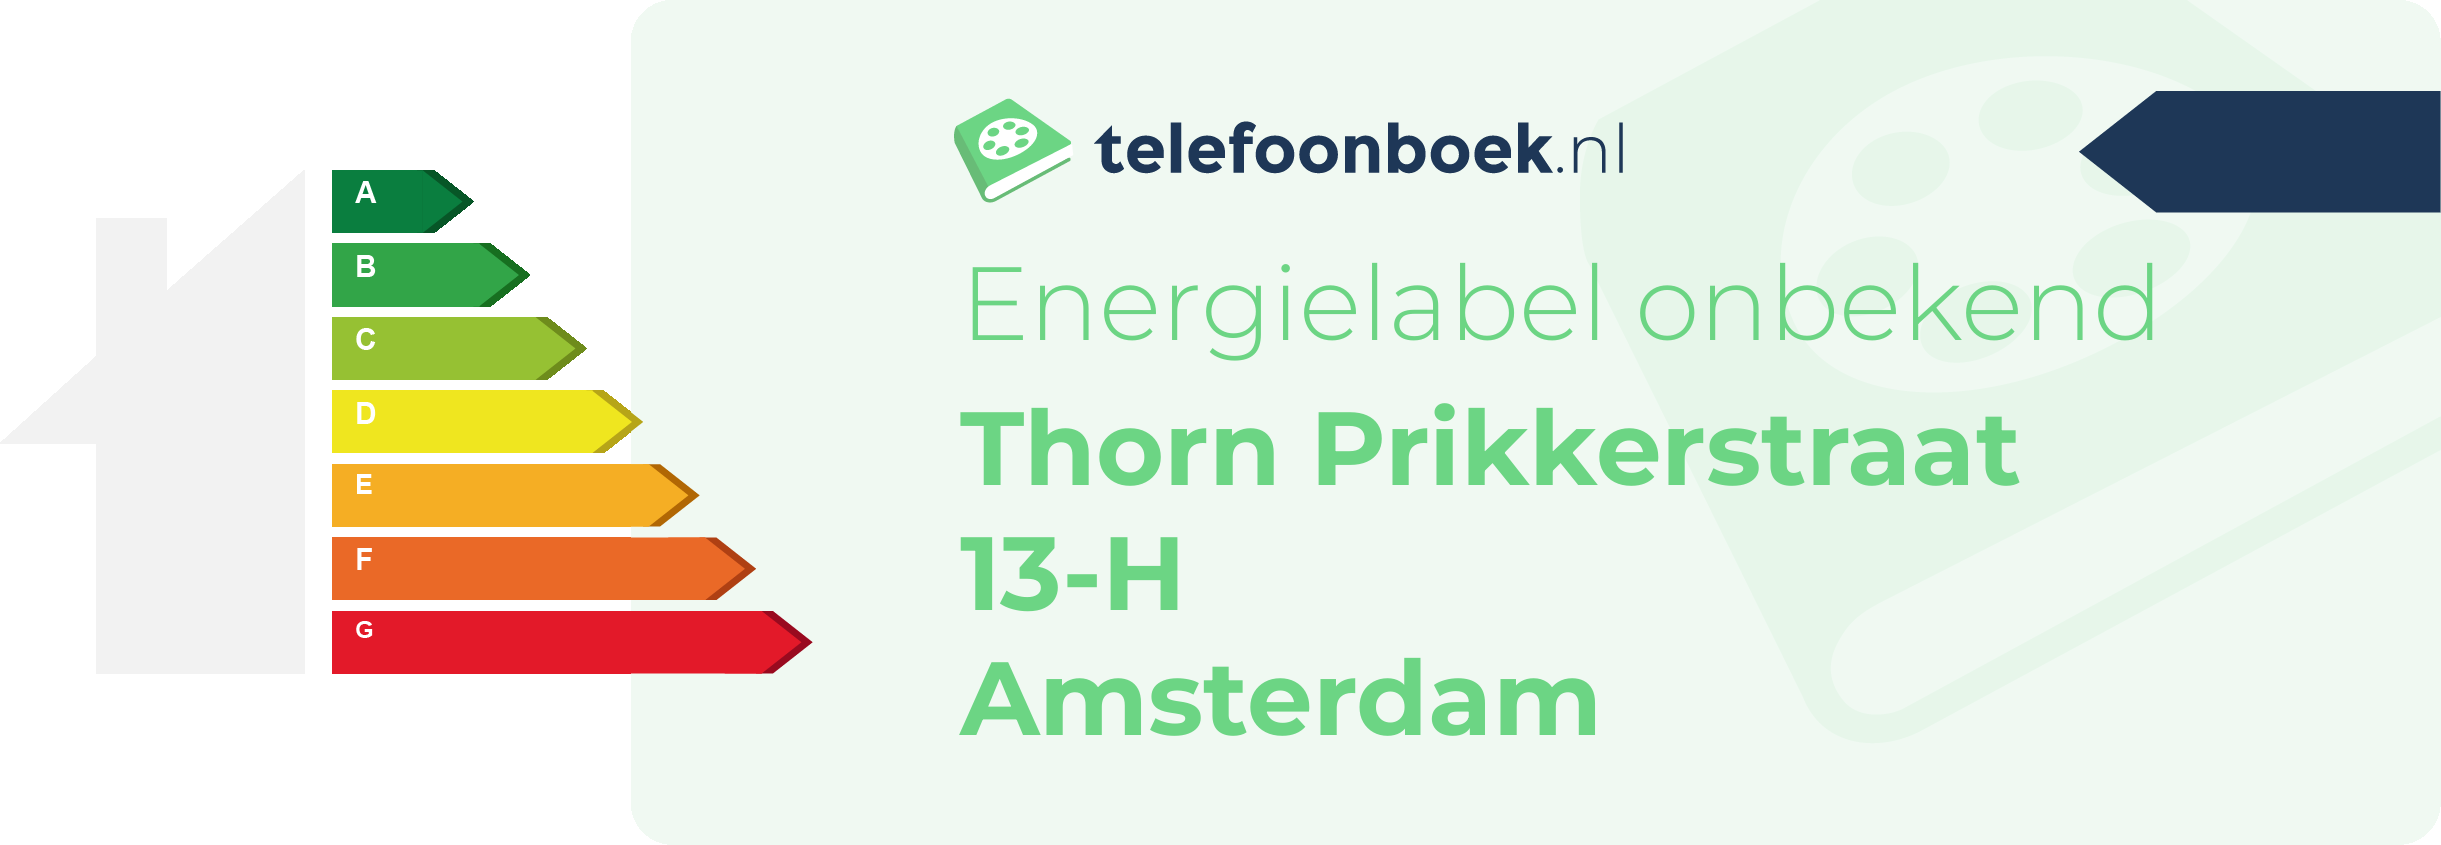 Energielabel Thorn Prikkerstraat 13-H Amsterdam